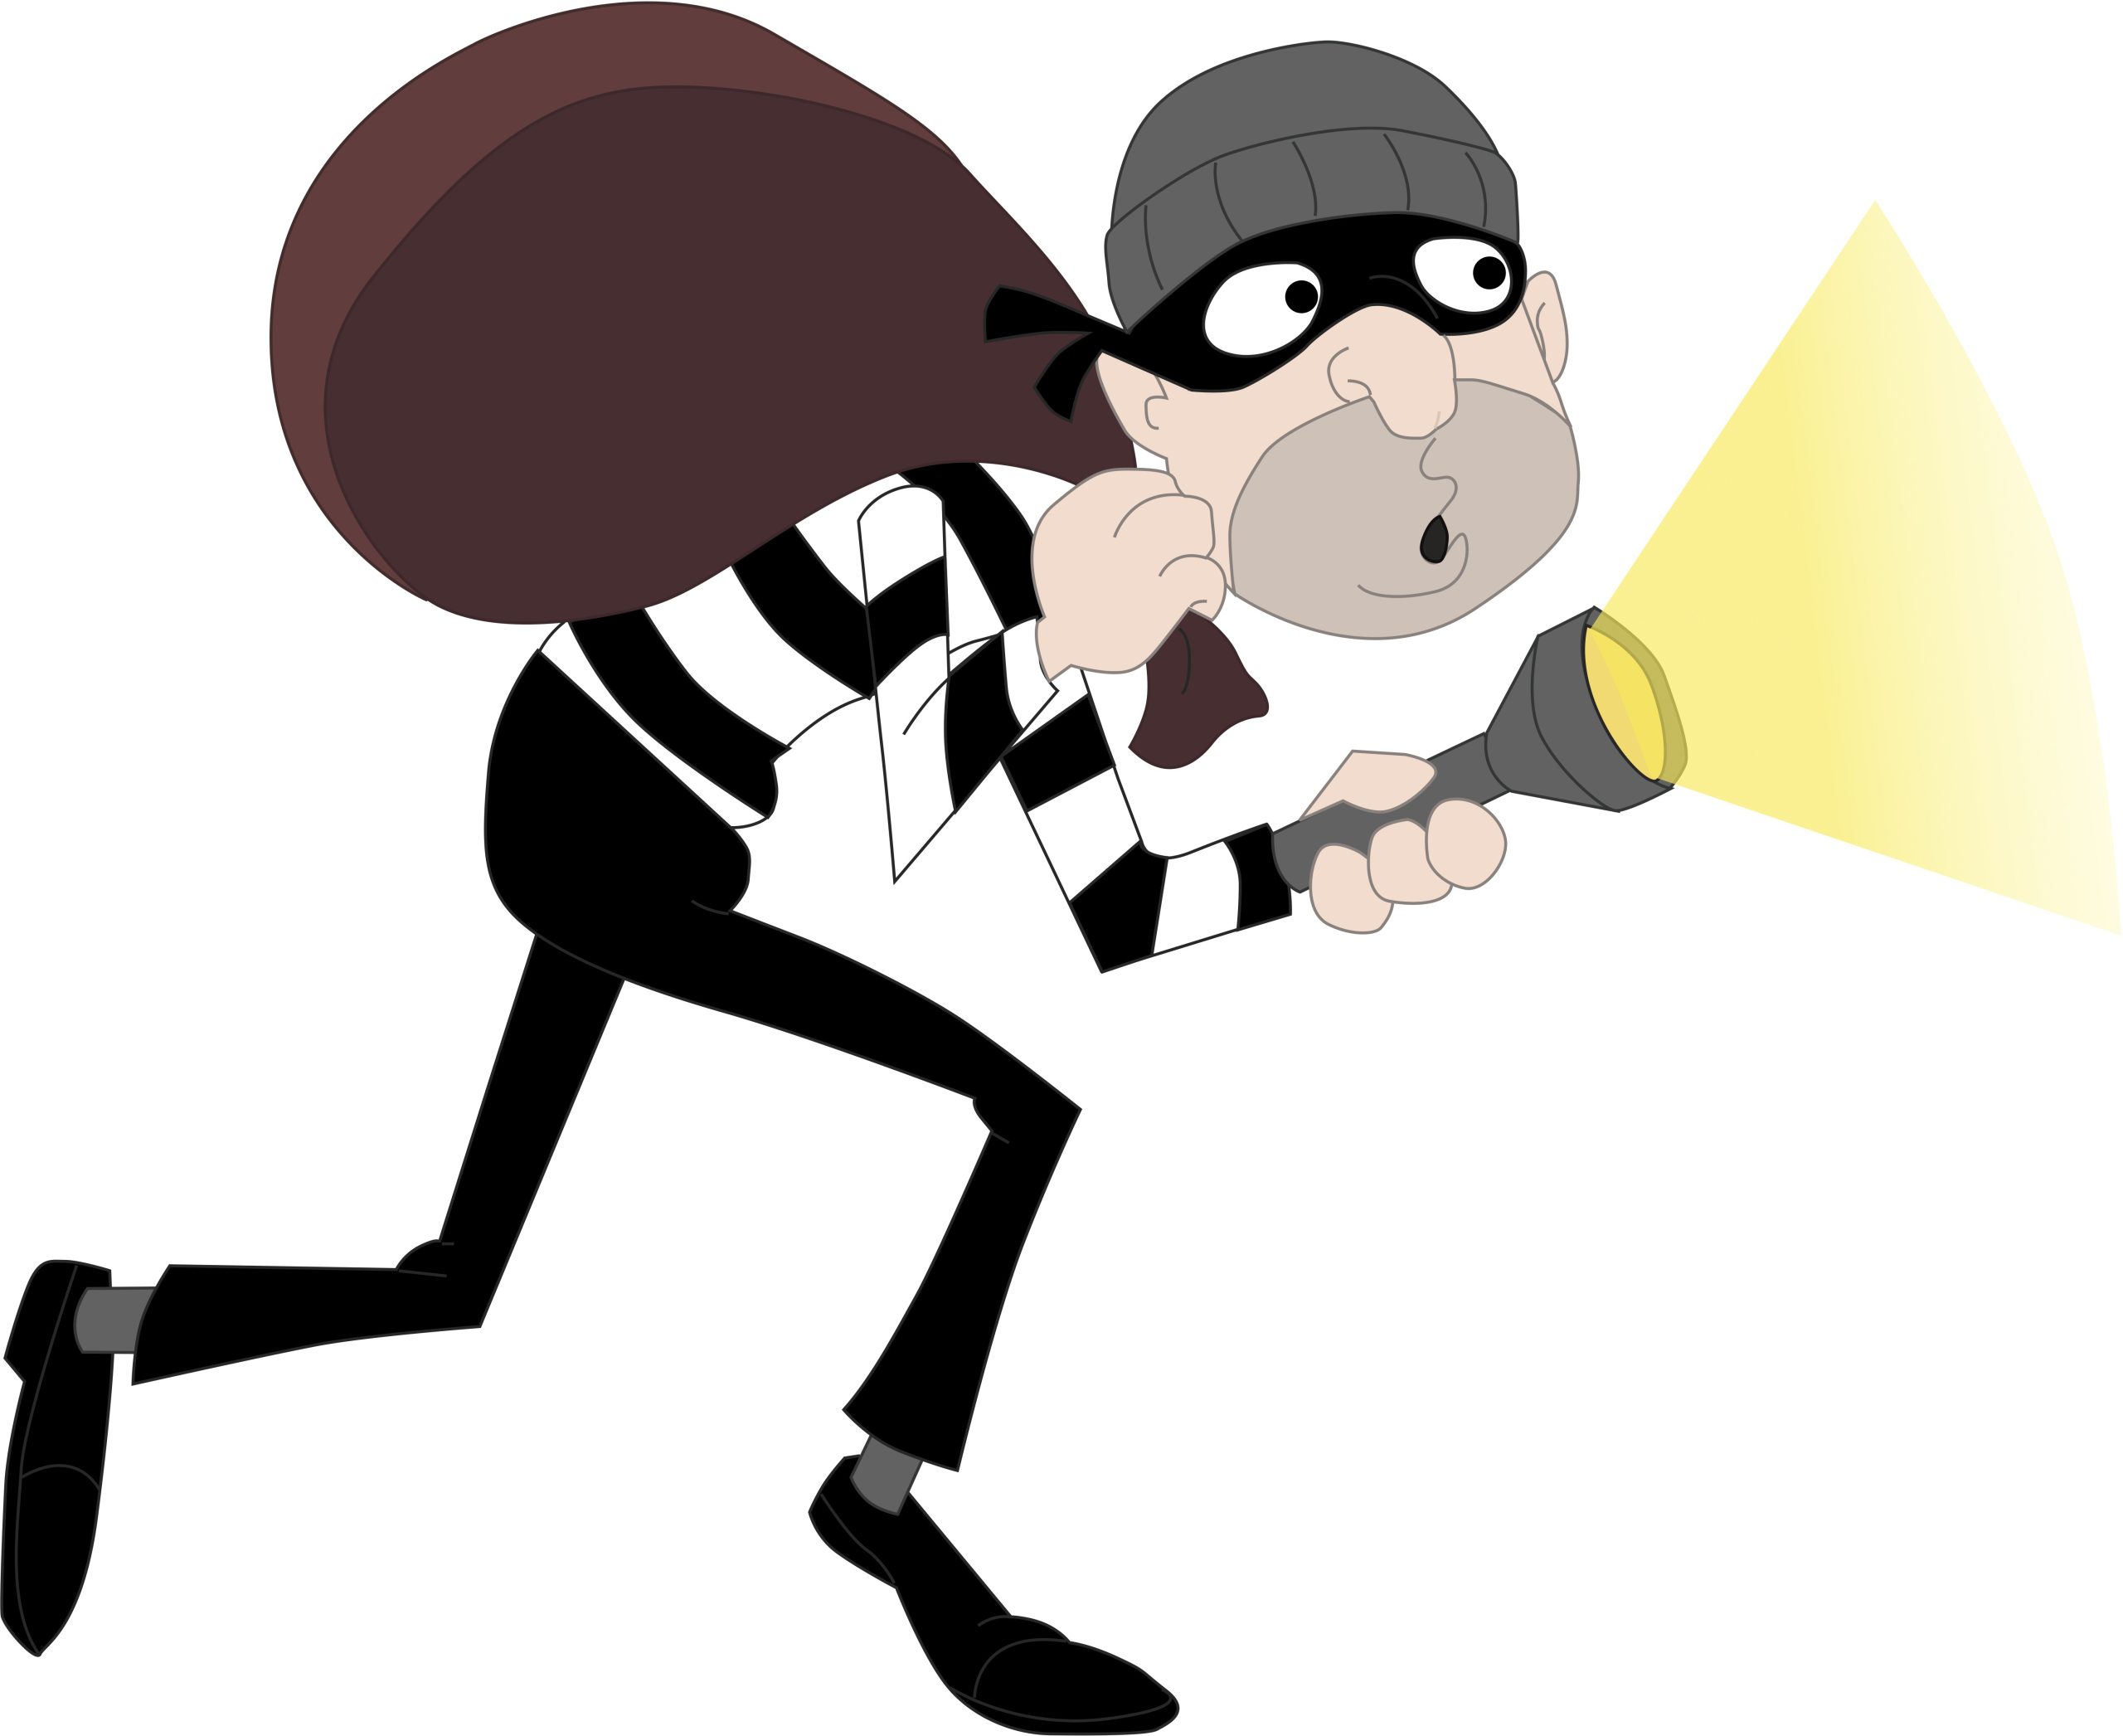 burglar, criminal, thief